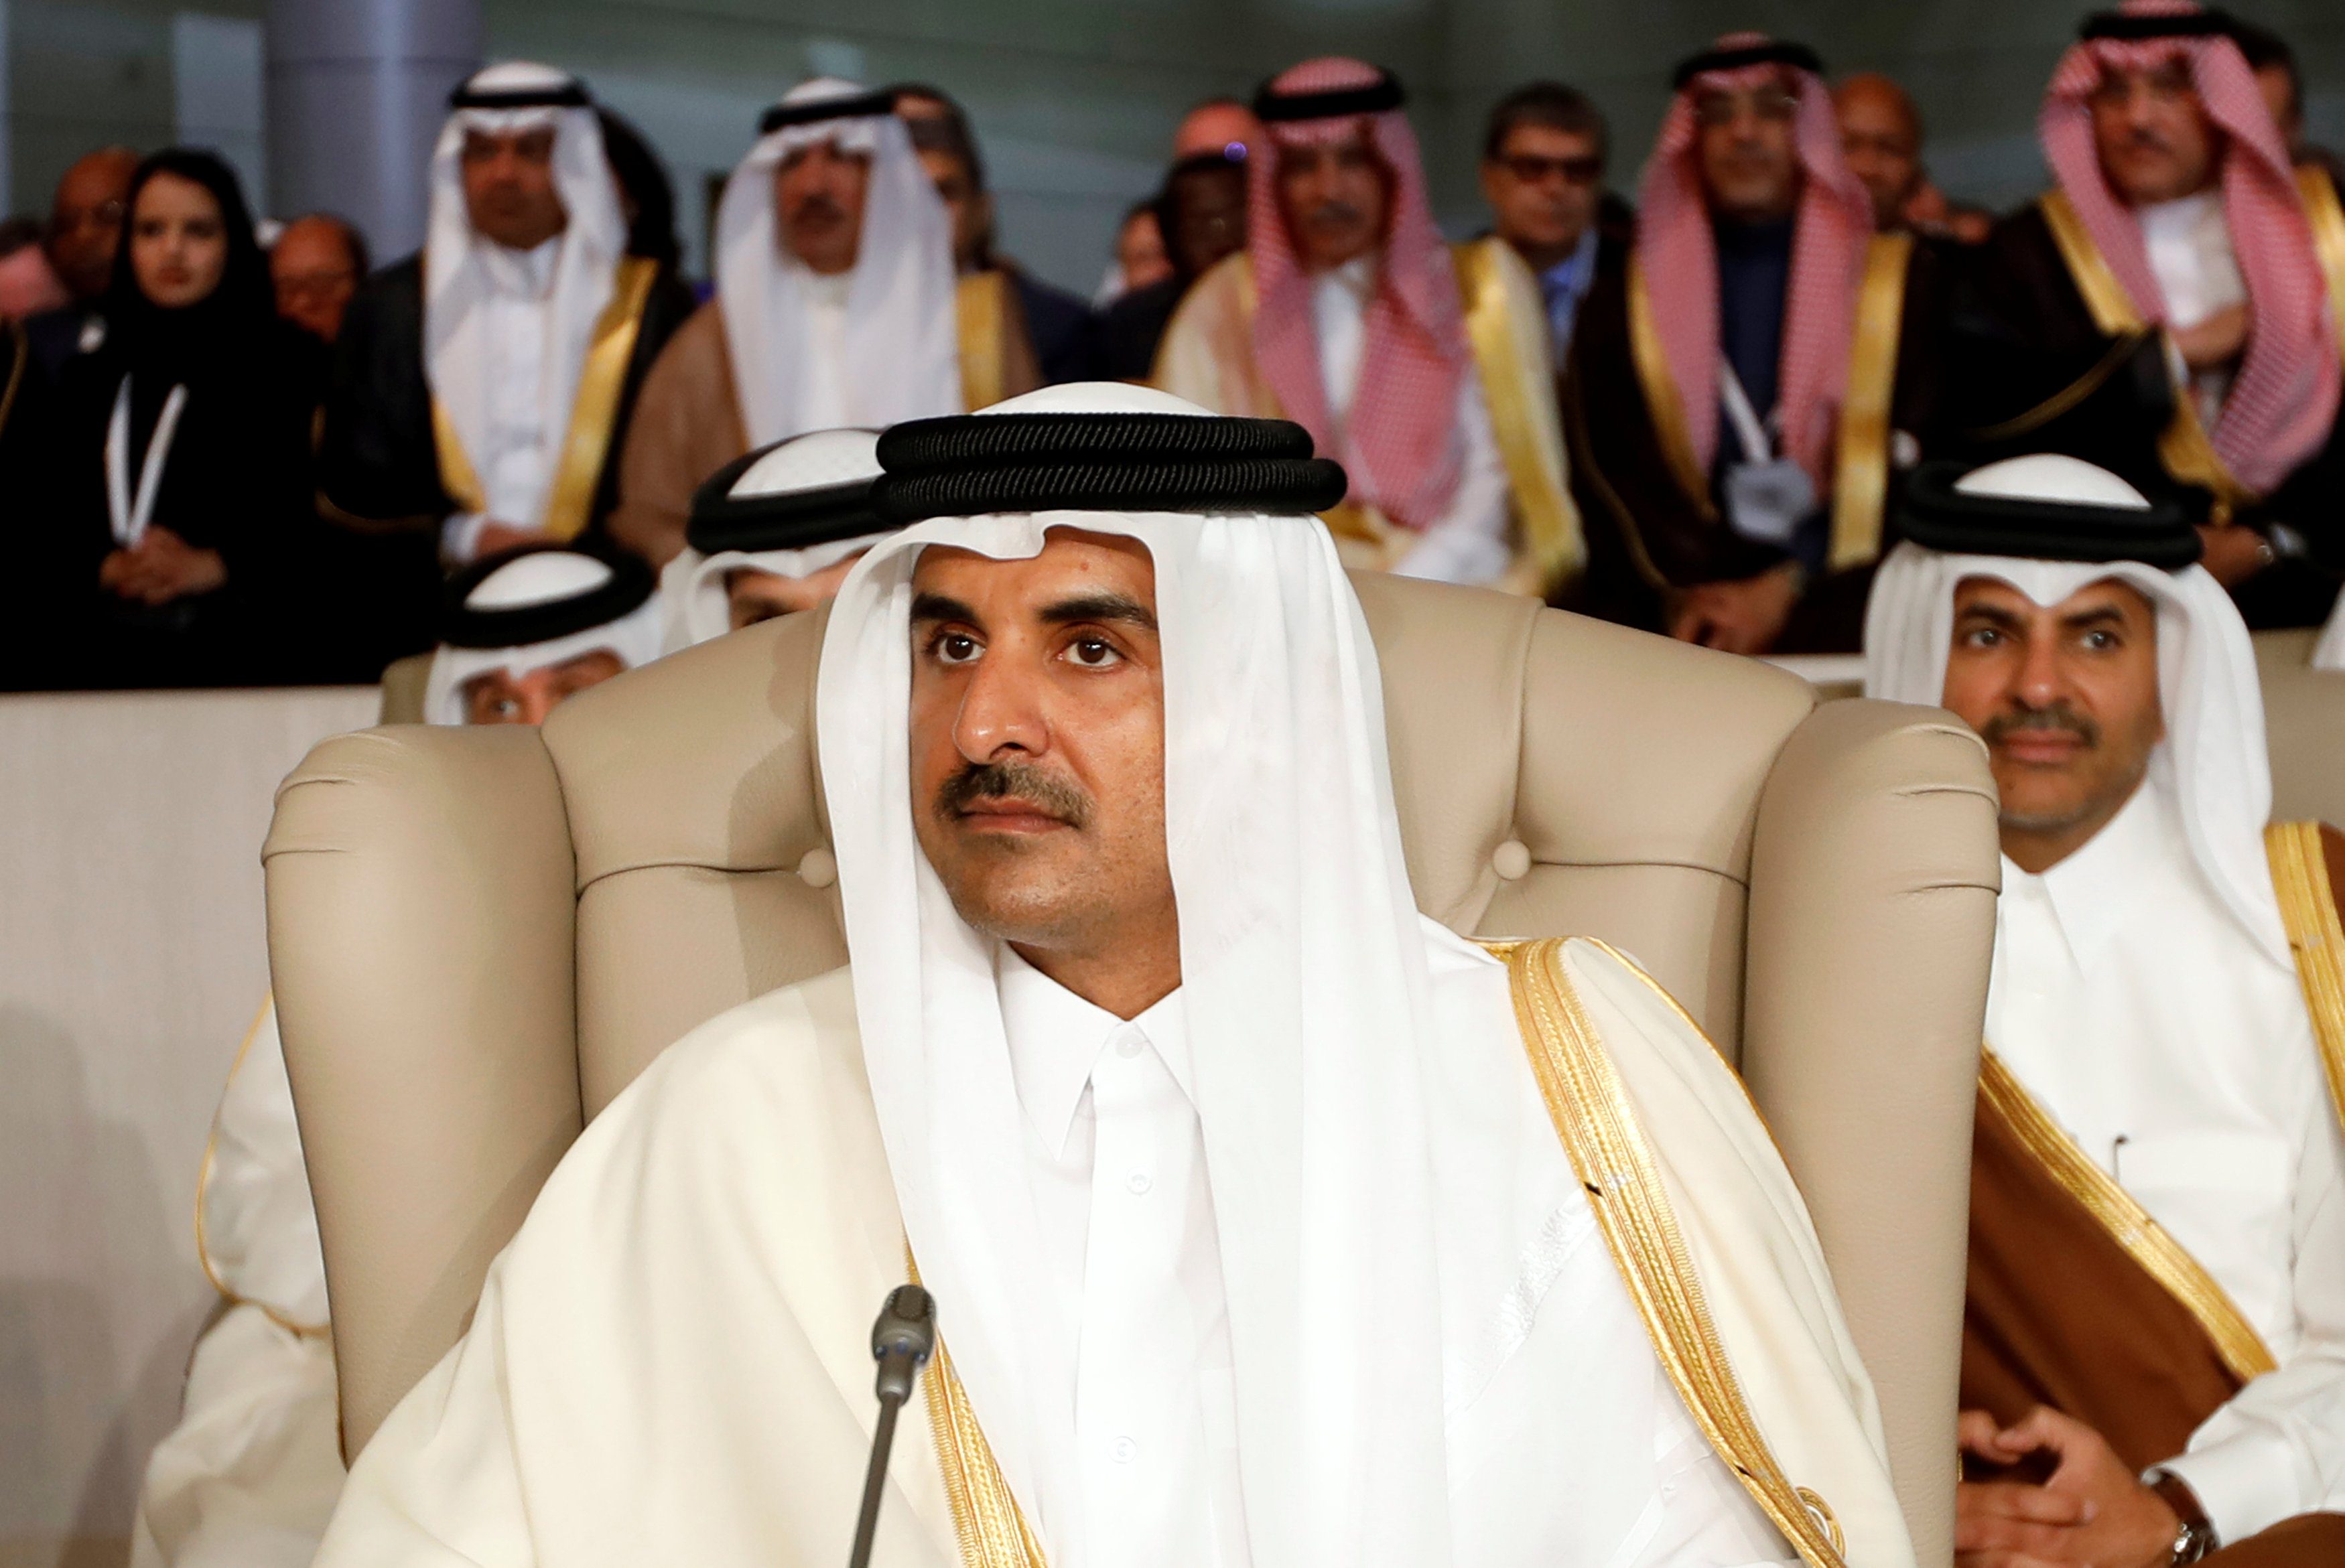 أمير قطر: الأنظمة التي منعت الحرية تتحمل مسؤولية العنف| عربي بوست